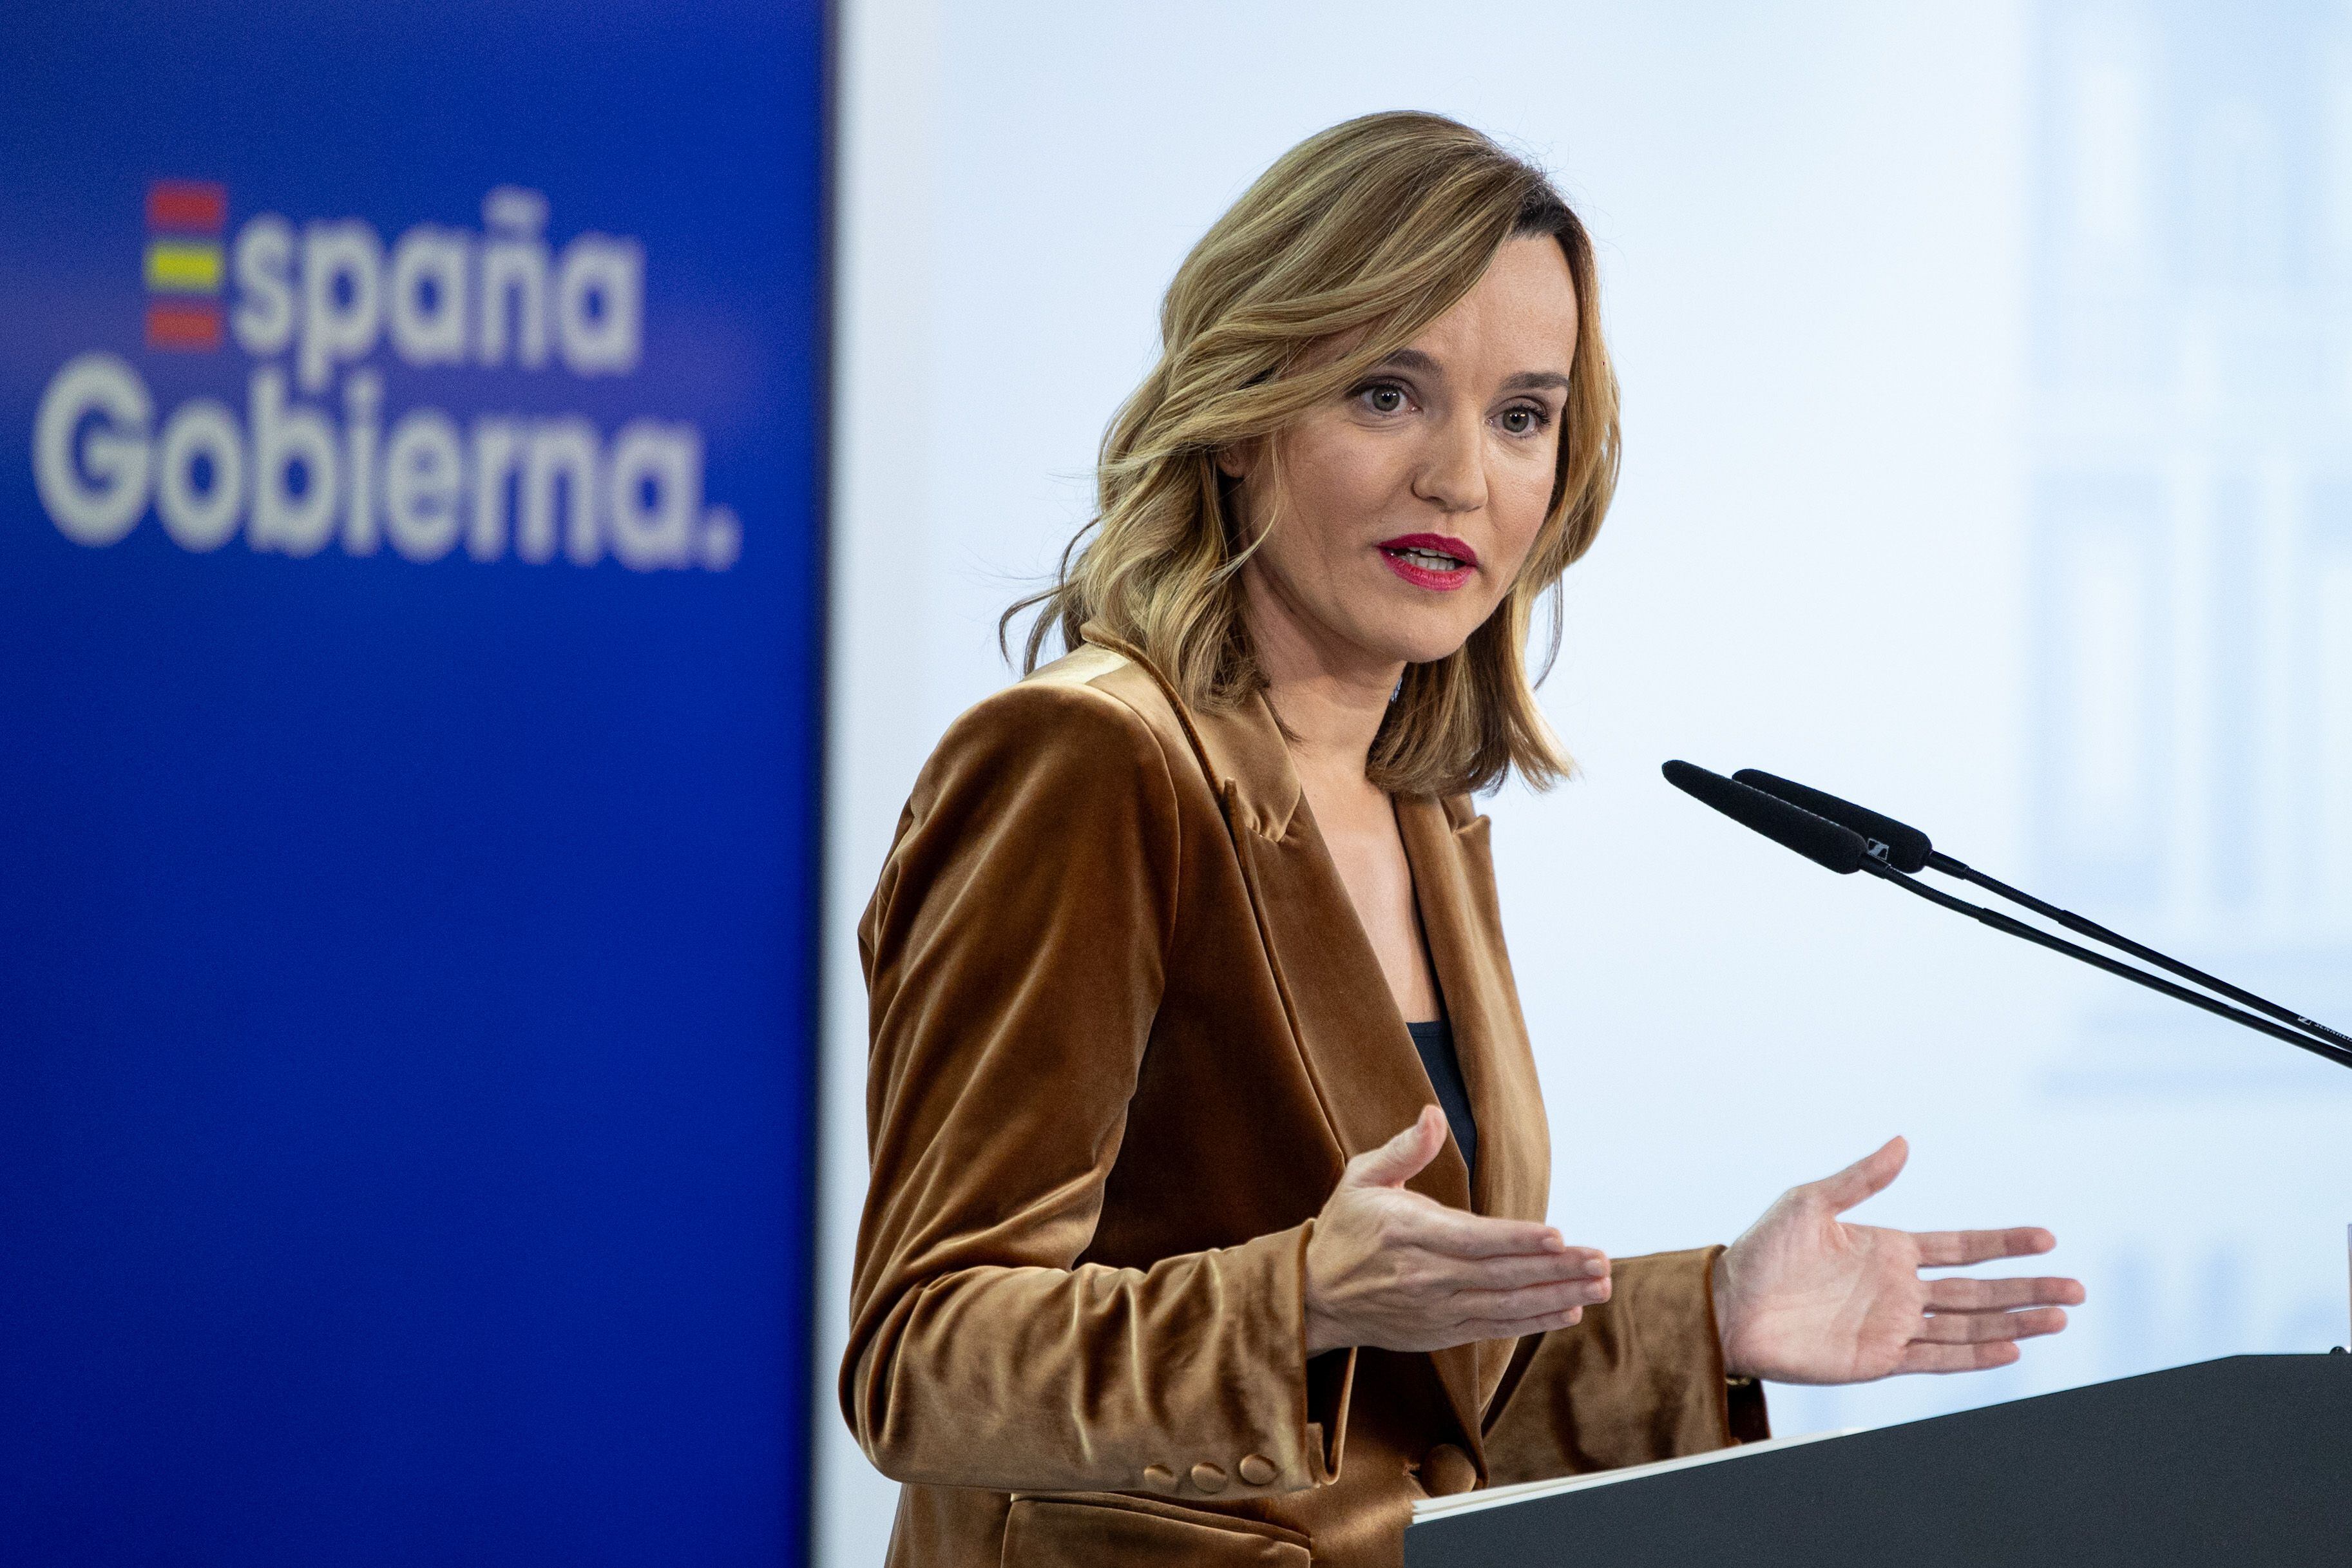  La portavoz del Gobierno y ministra de Educación, Pilar Alegría, en rueda de prensa en el Palacio de la Moncloa, donde ha ofrecido detalles del encuentro.